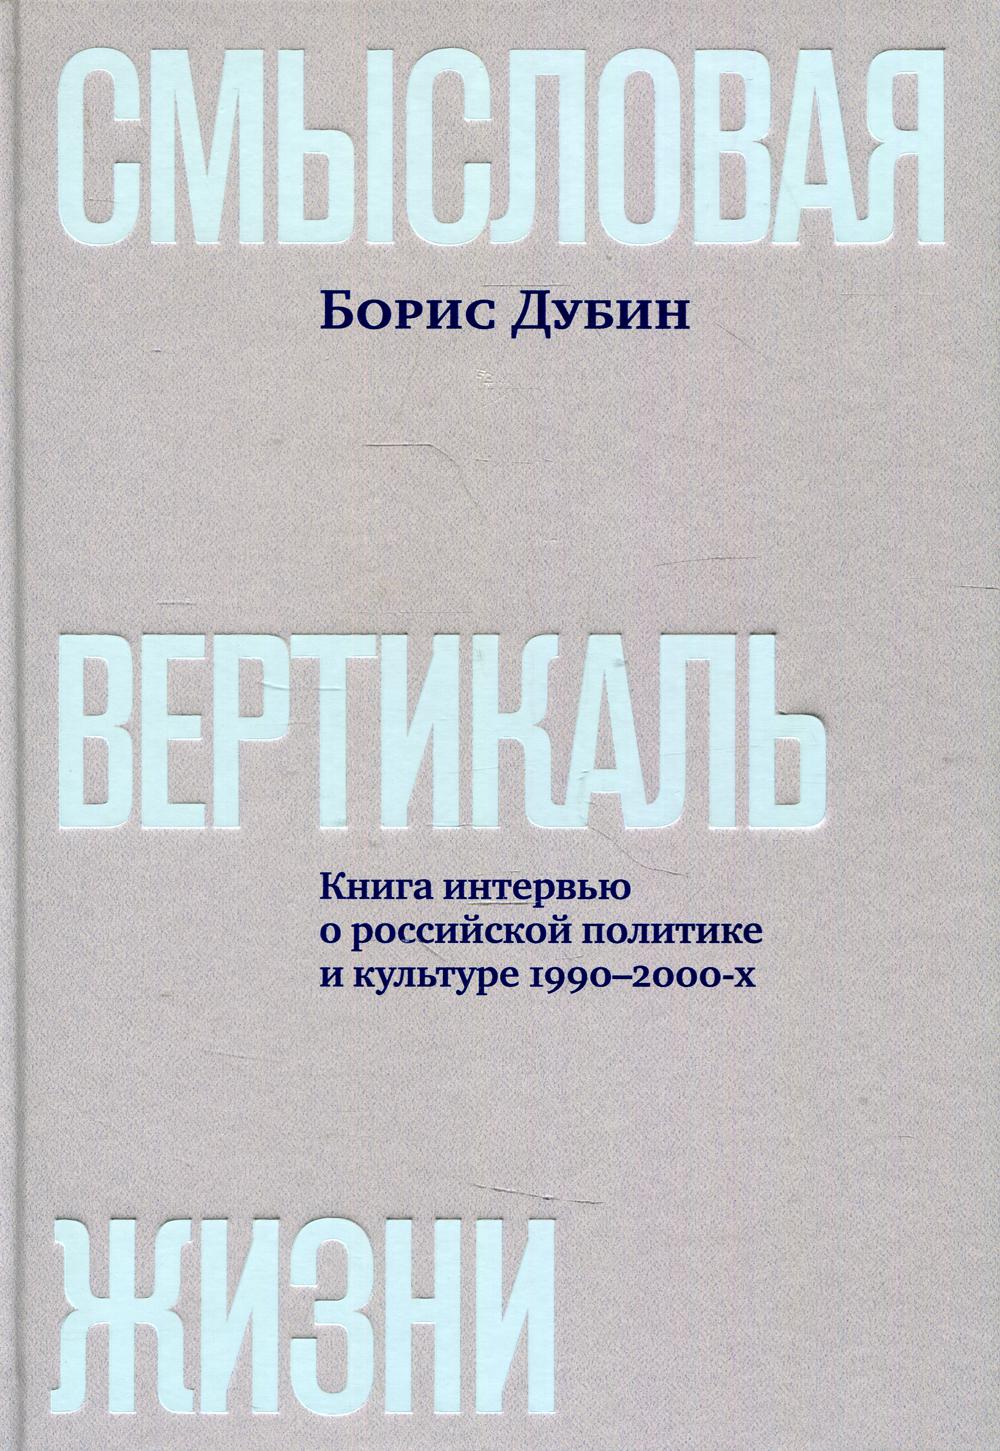 Смысловая вертикаль жизни: книга интервью о российской политике и культуре 1990–2000-х